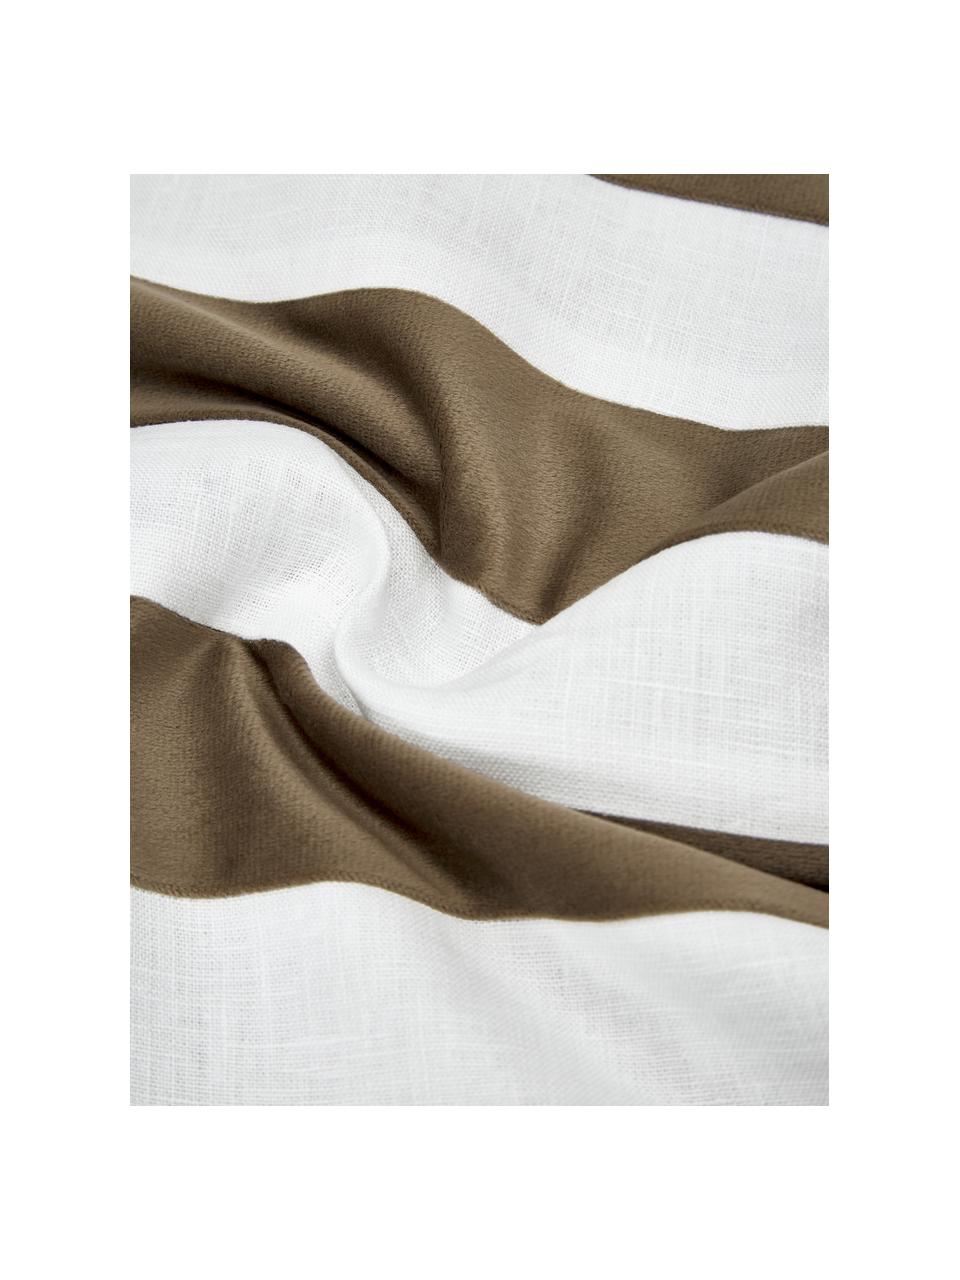 Kussenhoes Maui gemaakt van een fluweel-linnen mix in bruin/wit, Bruin, wit, B 30 x L 50 cm